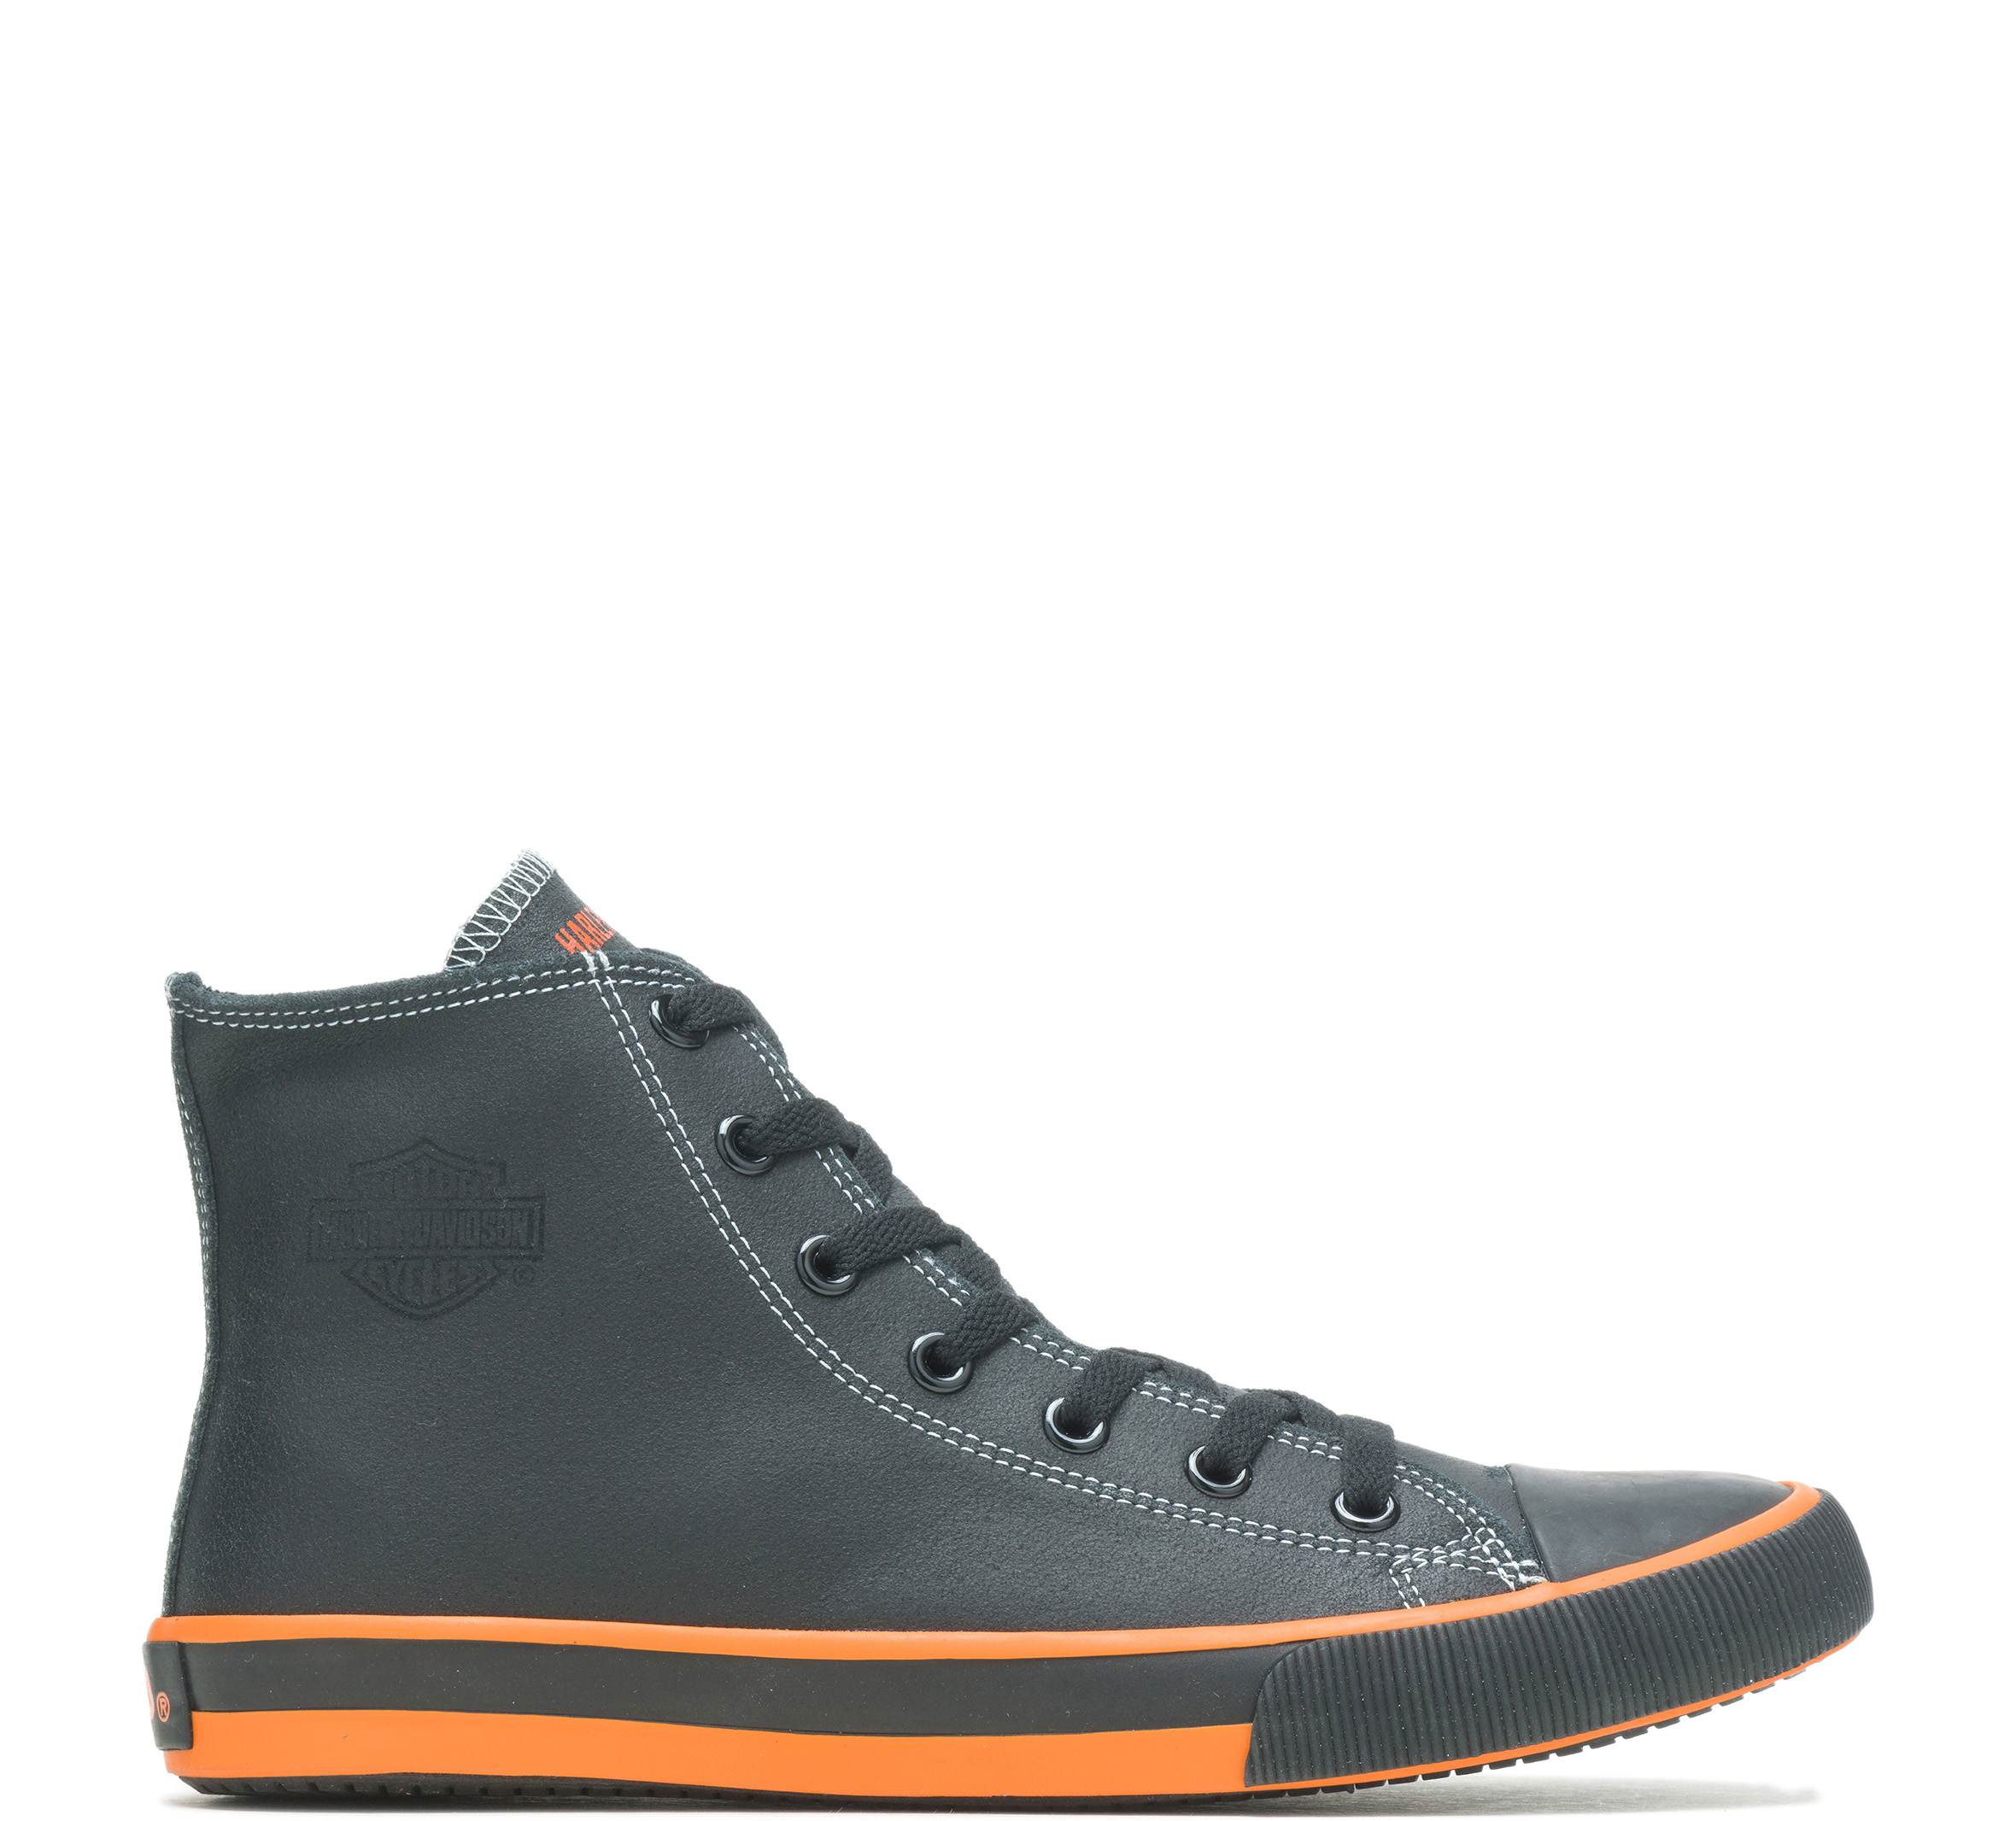 Harley Davidson Men Shoes Sneaker Roarke Black Leather Casual 